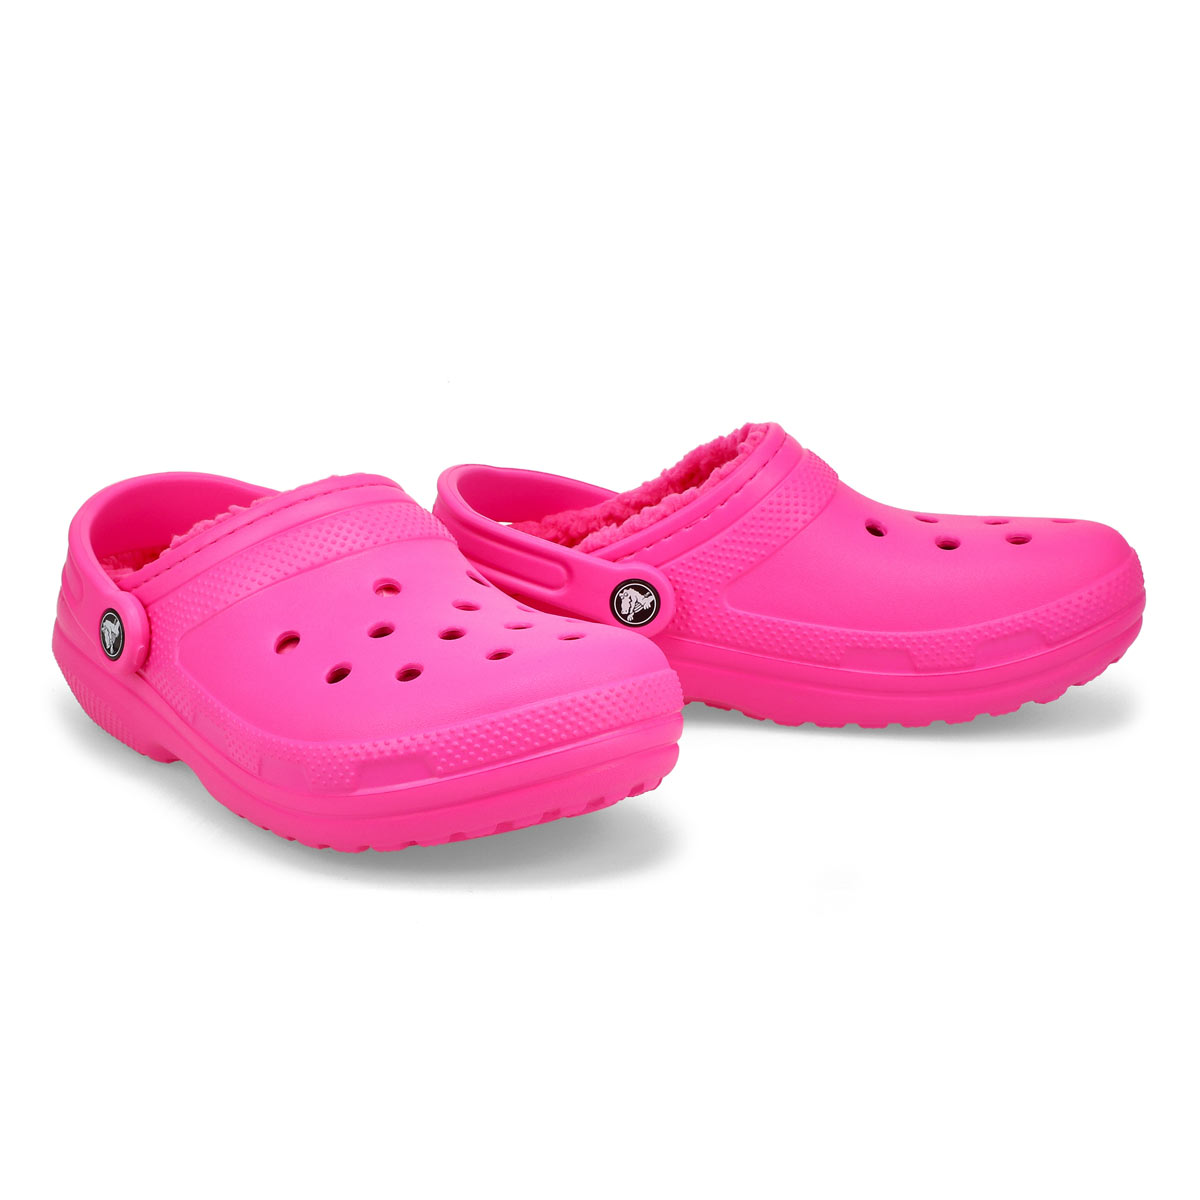 crocs classic translucent clog pink